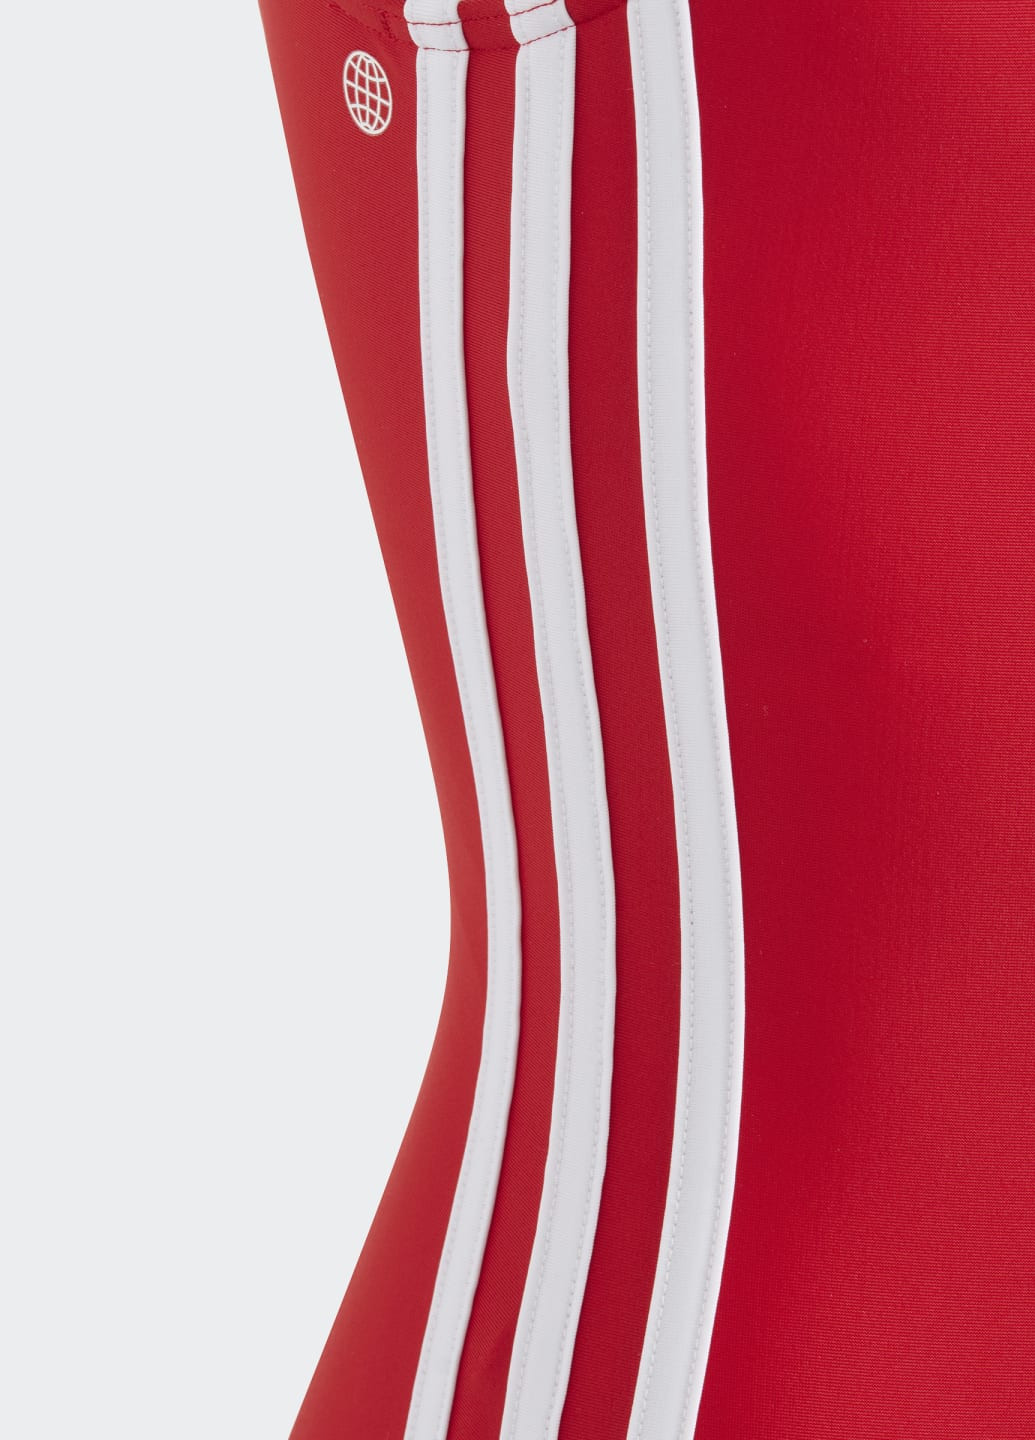 Червоний літній цільний купальник originals adicolor 3-stripes adidas